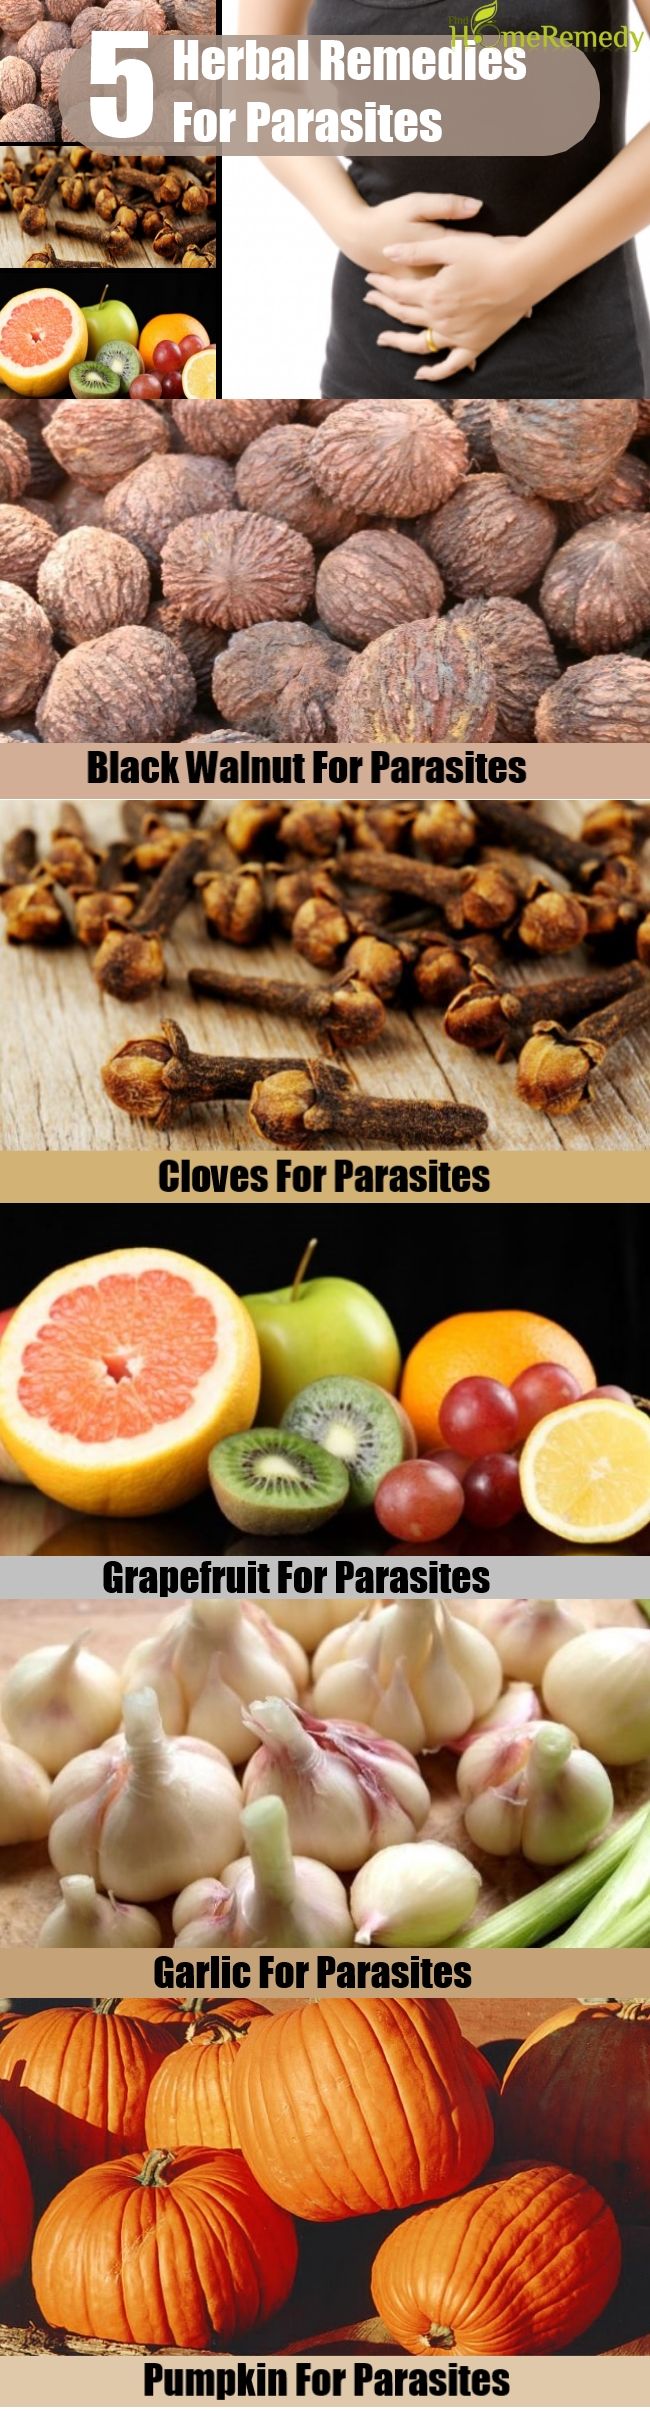 5 Remèdes naturels pour les parasites